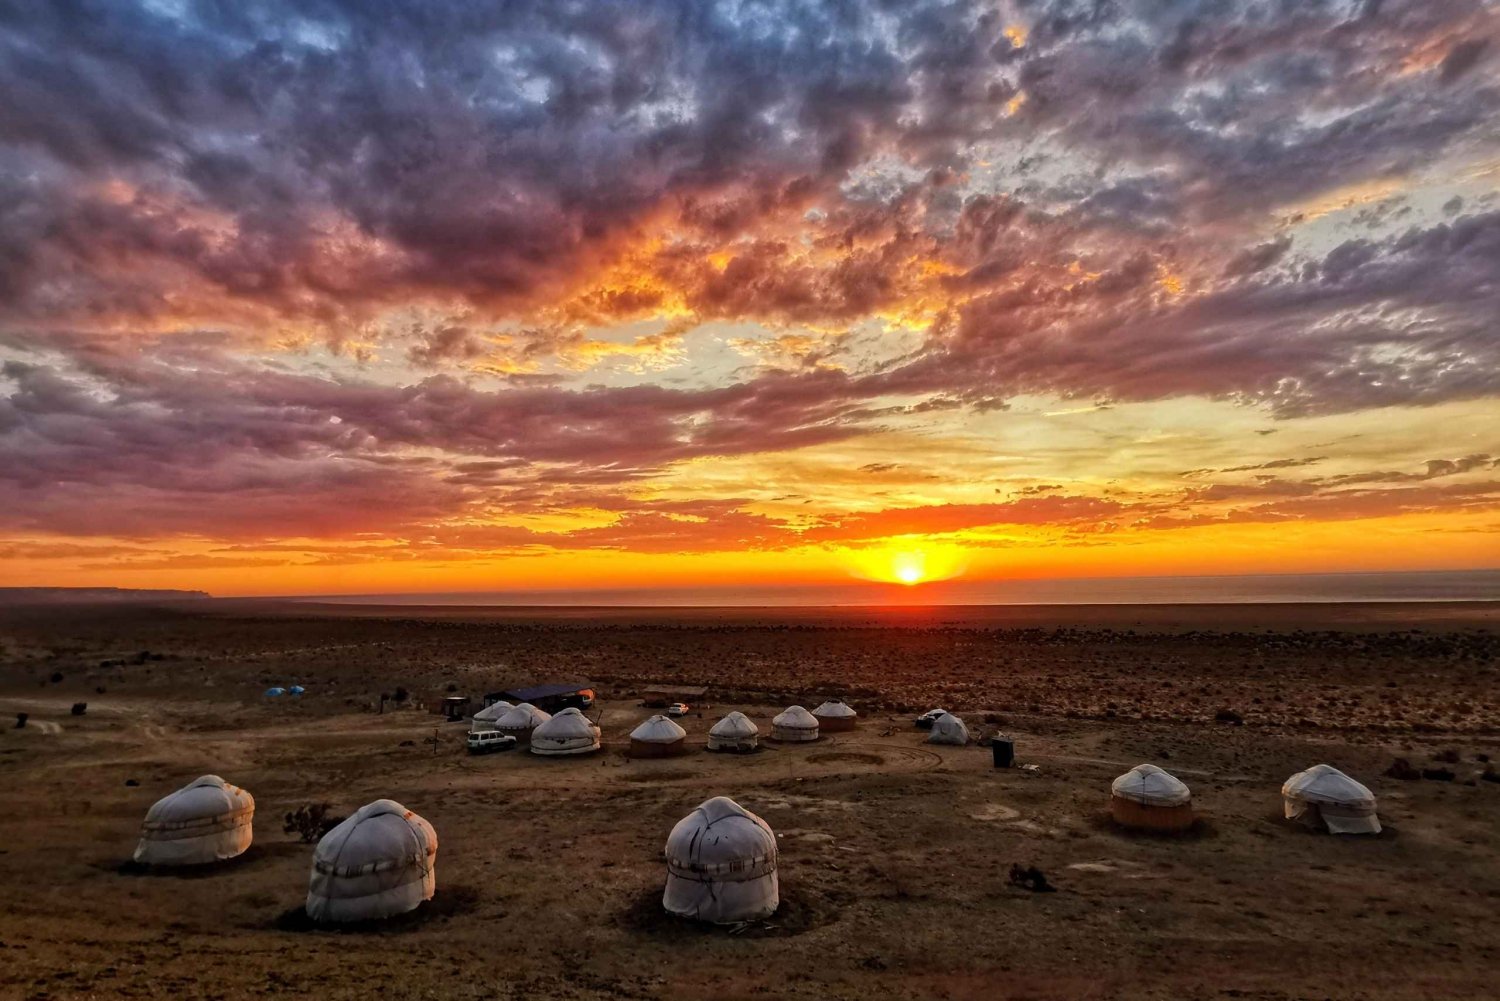 Aralmeer: ontdek de omgeving, cultuur, tradities